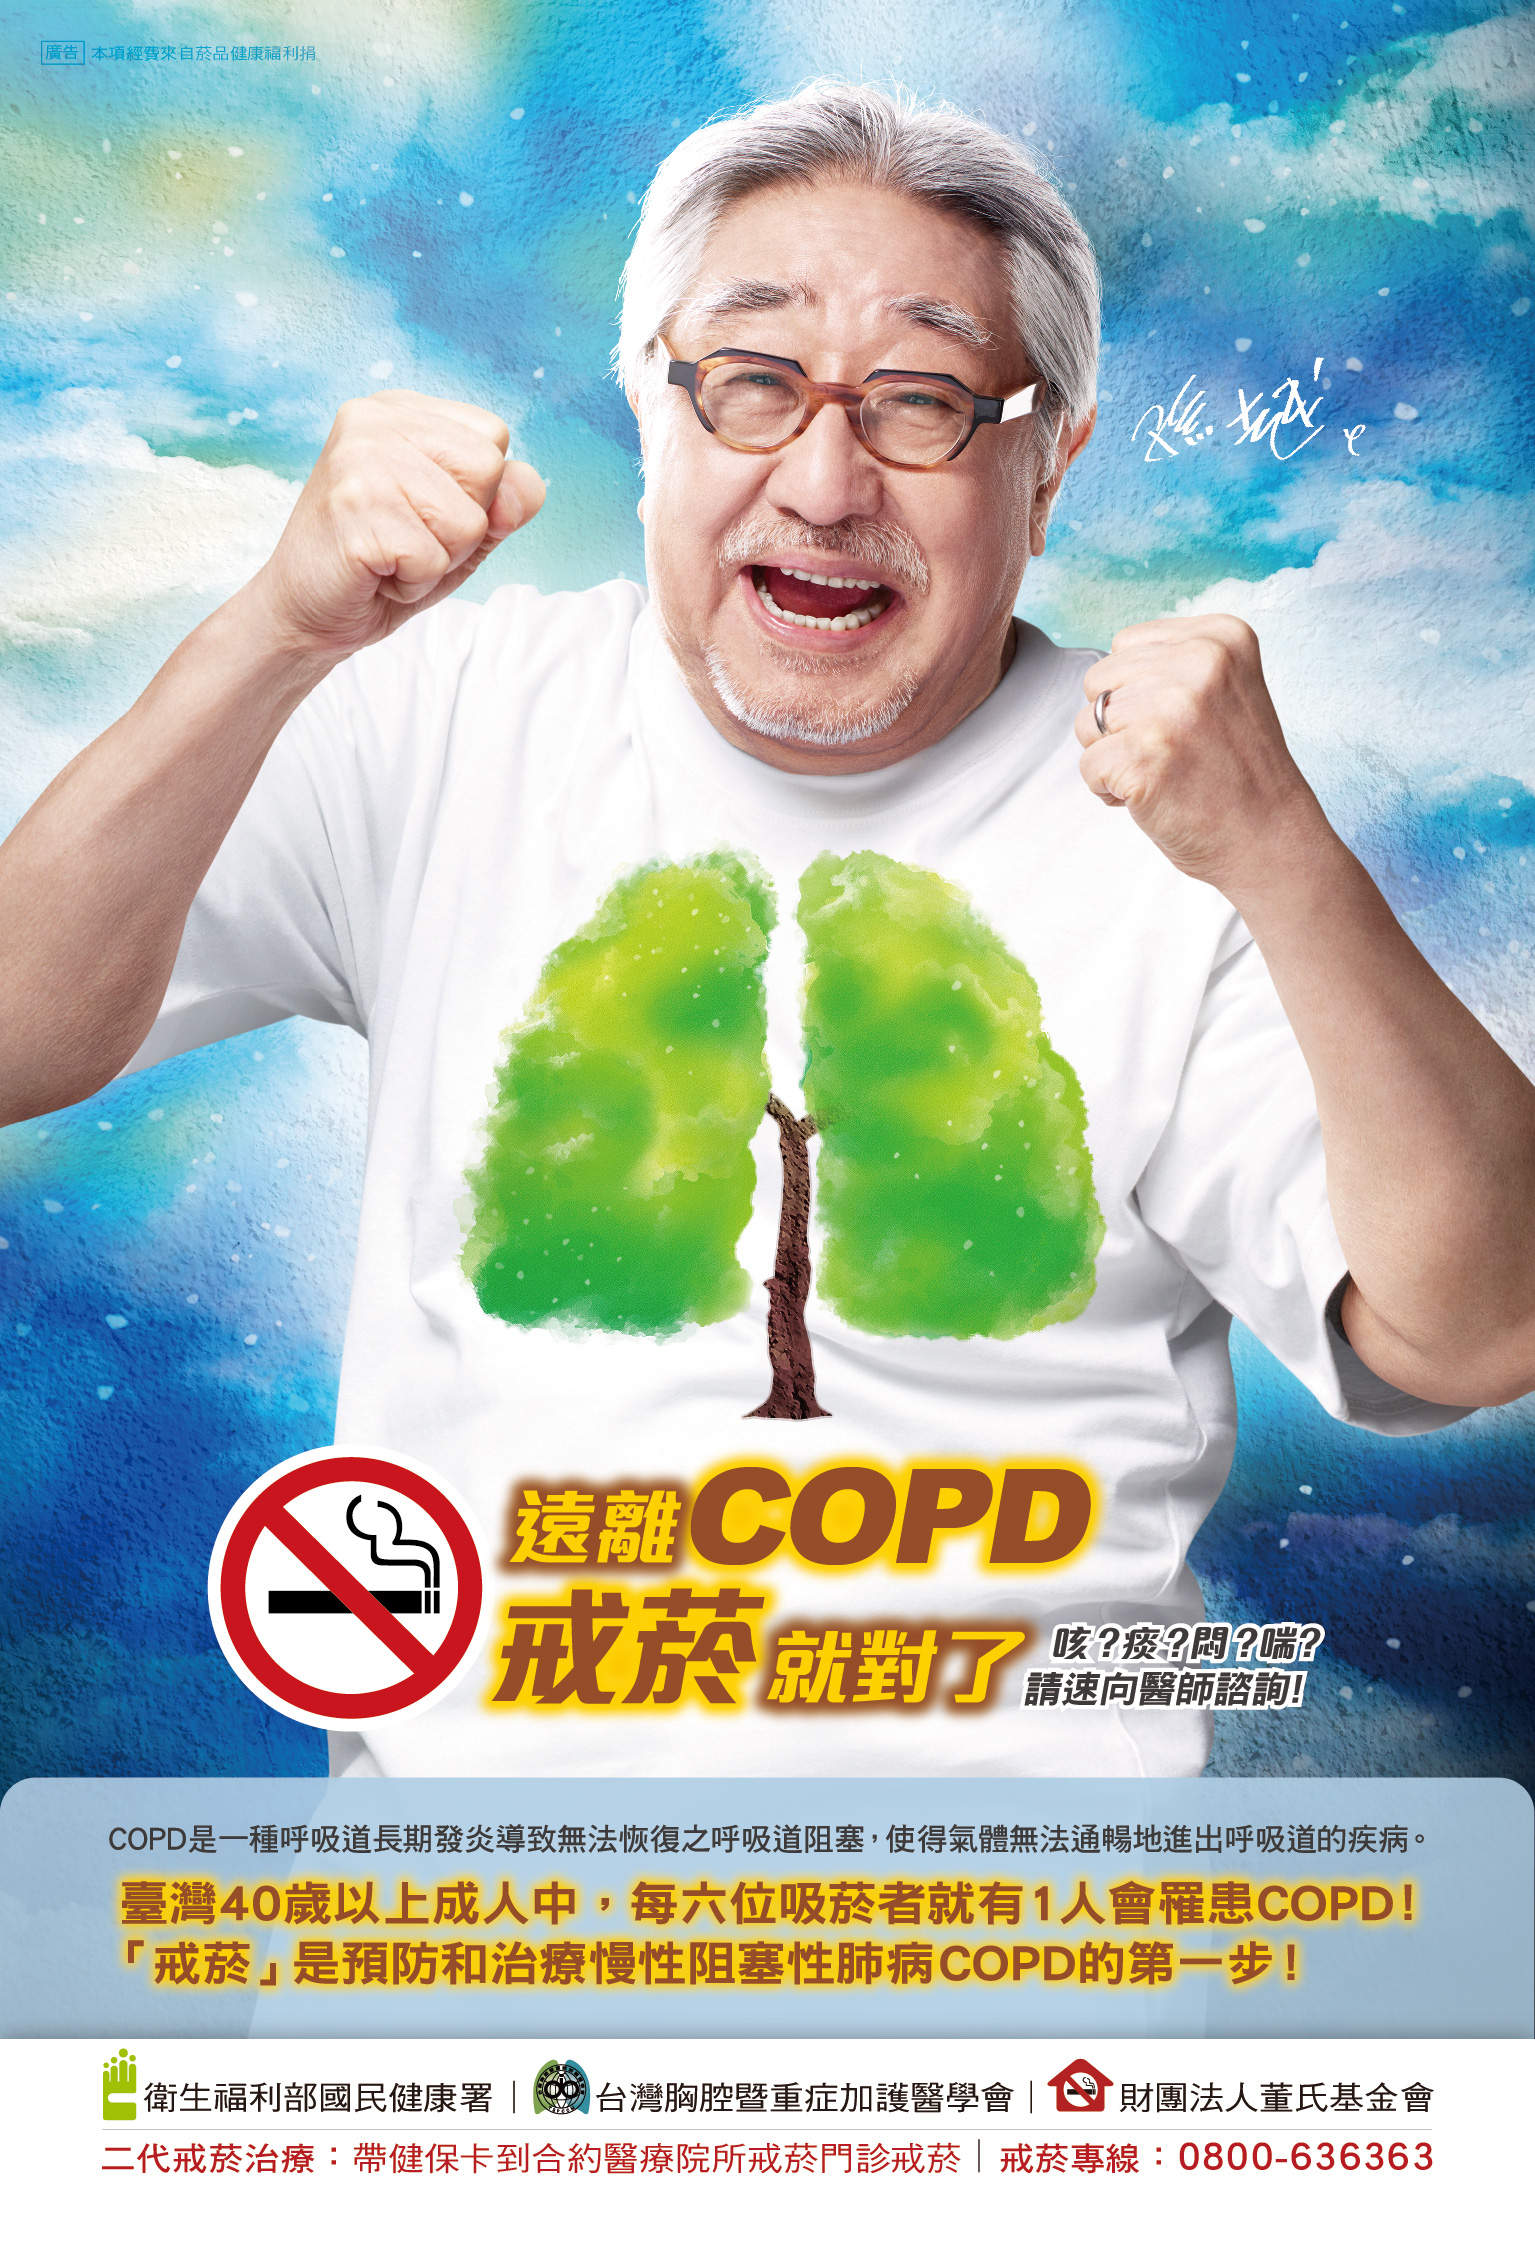 遠離COPD戒菸就對了 (海報)文章照片